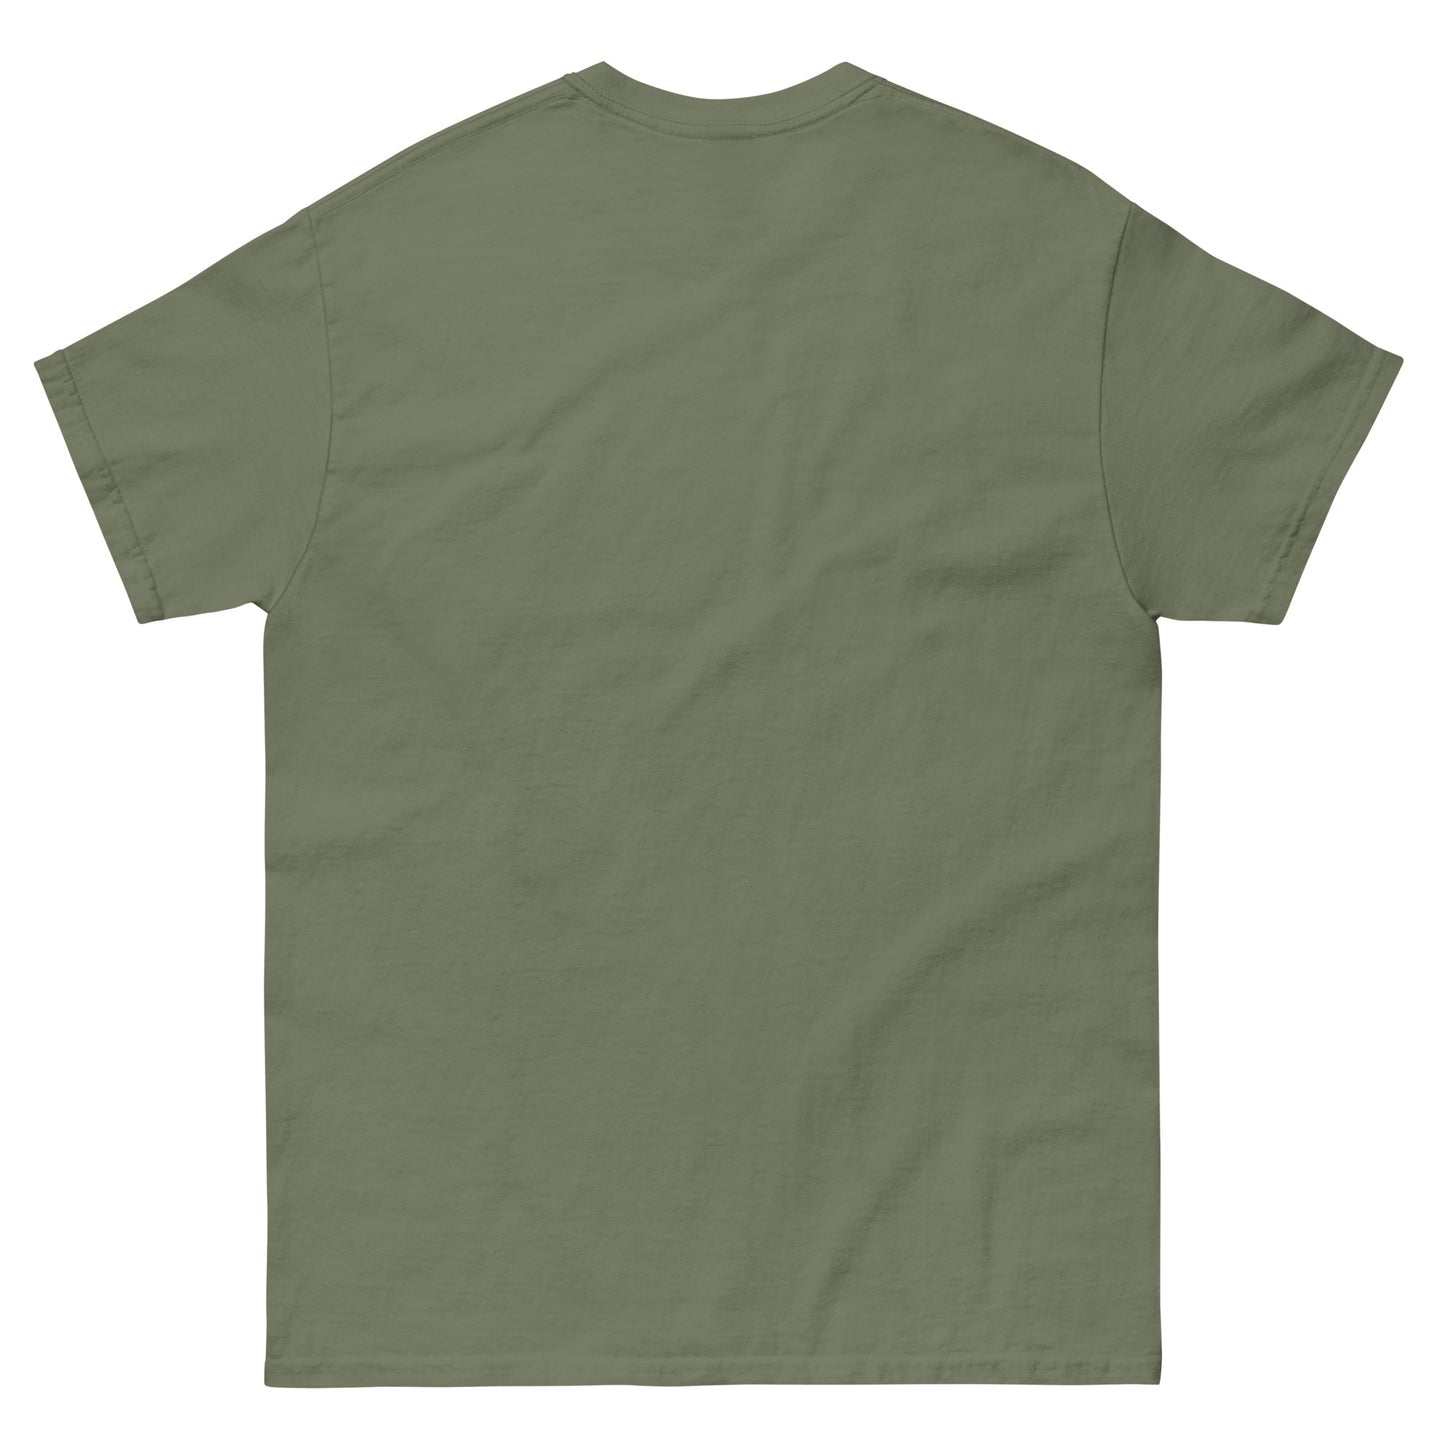 Duffman T-Shirt